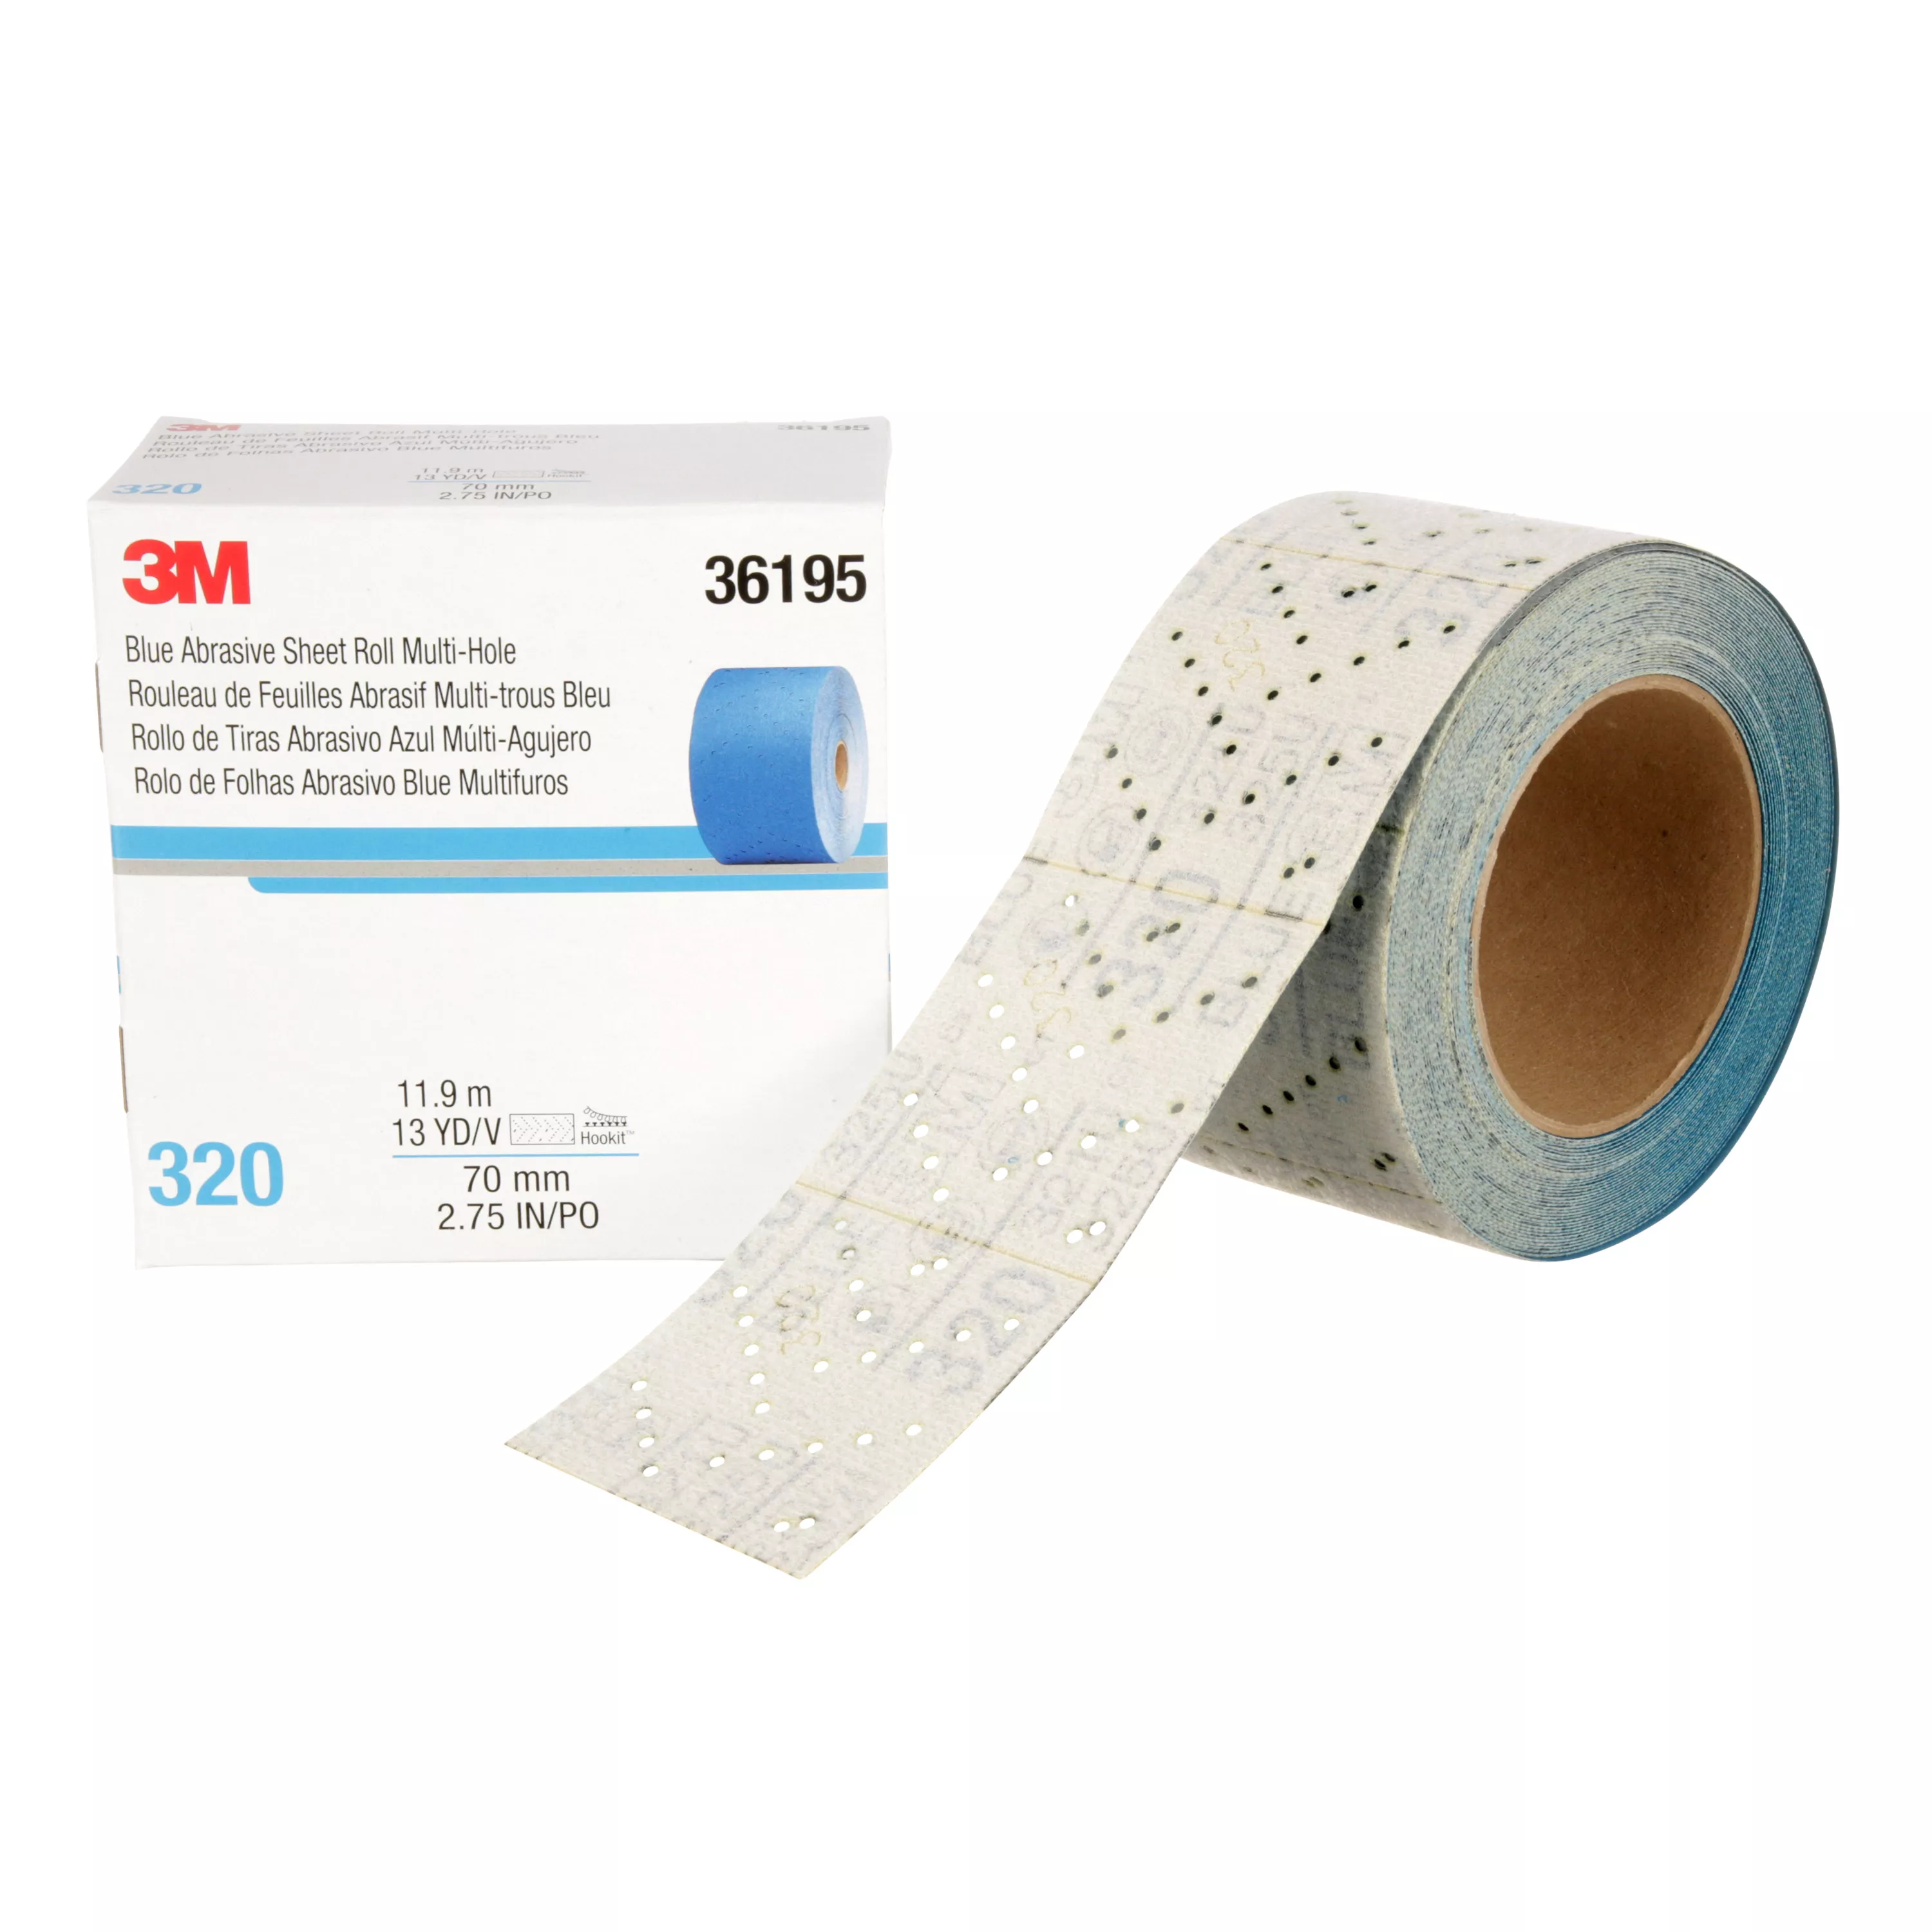 3M™ Hookit™ Blue Abrasive Sheet Roll, 36195, 320 grade, 2.75 in x 13 yd, Multi-hole, 4 per case